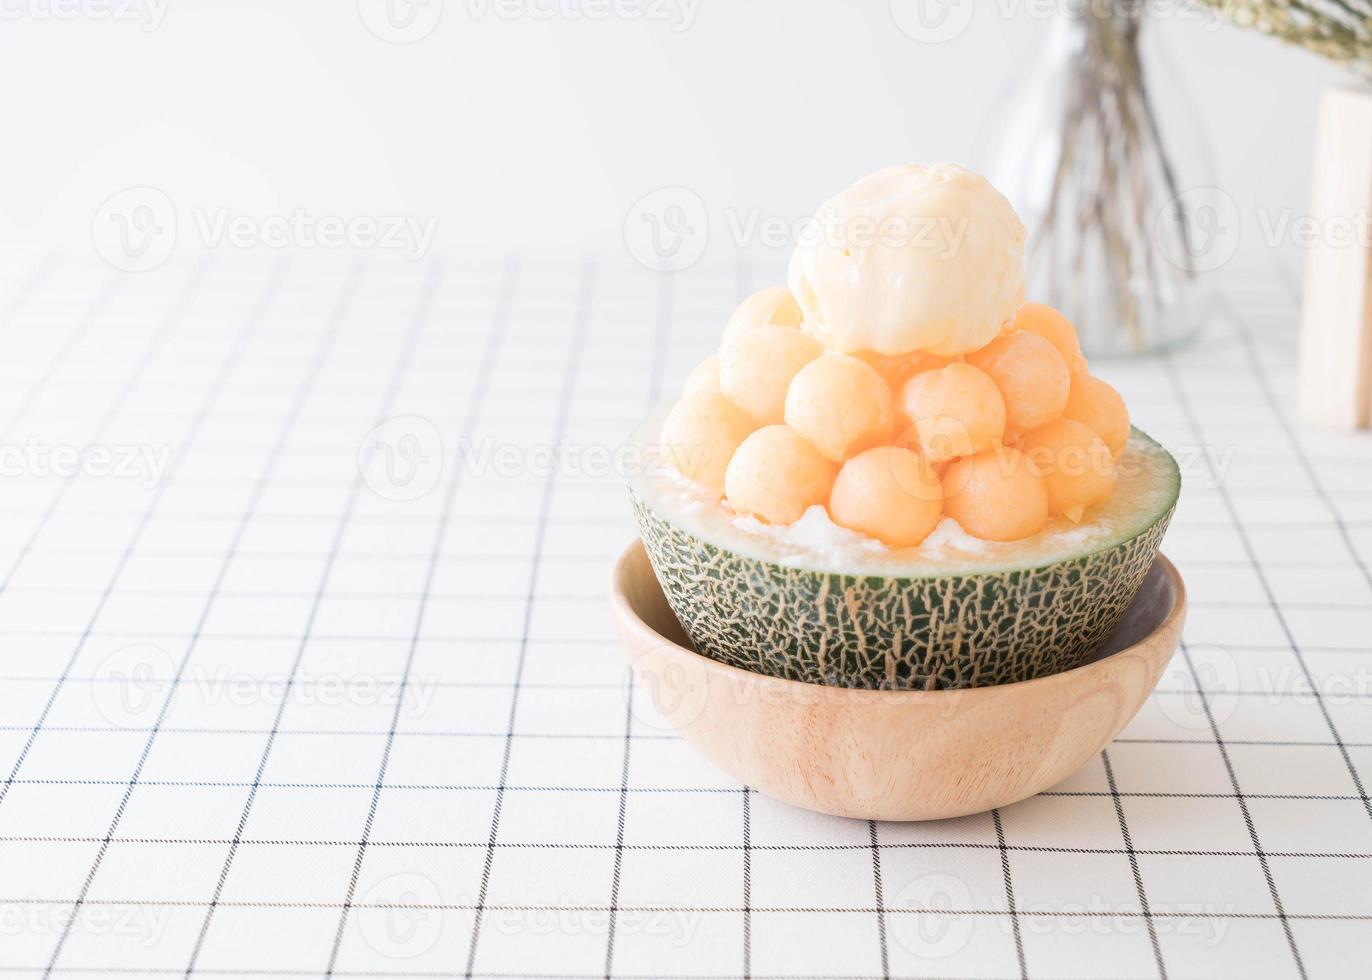 Ice melon bingsu, famoso helado coreano en la mesa foto